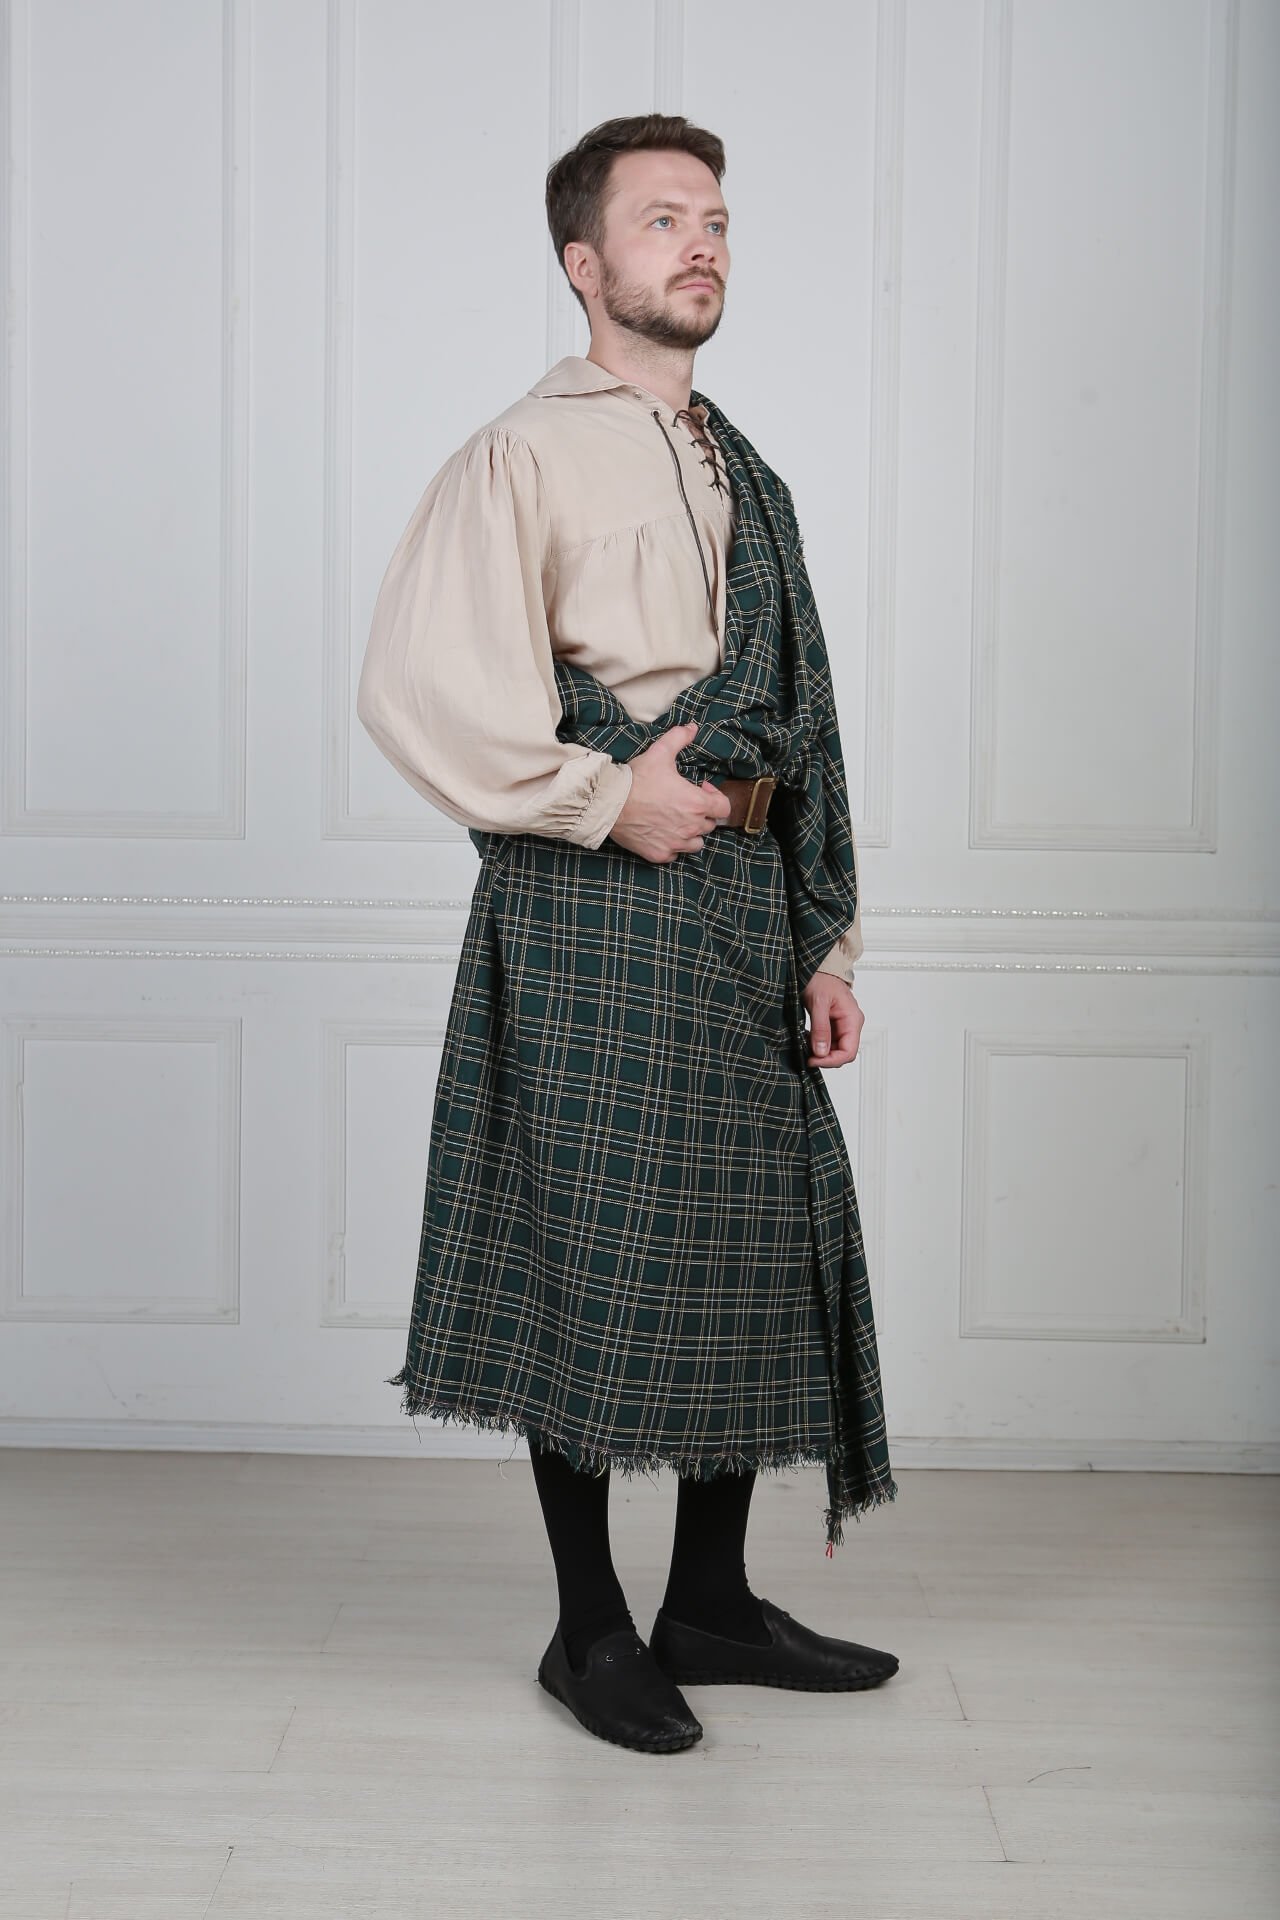 Irish national. Шотландский килт 17 век. Тартан Шотландия национальный костюм. Национальный костюм Ирландии мужской килт. Шотландия Национальная одежда мужчин килт.